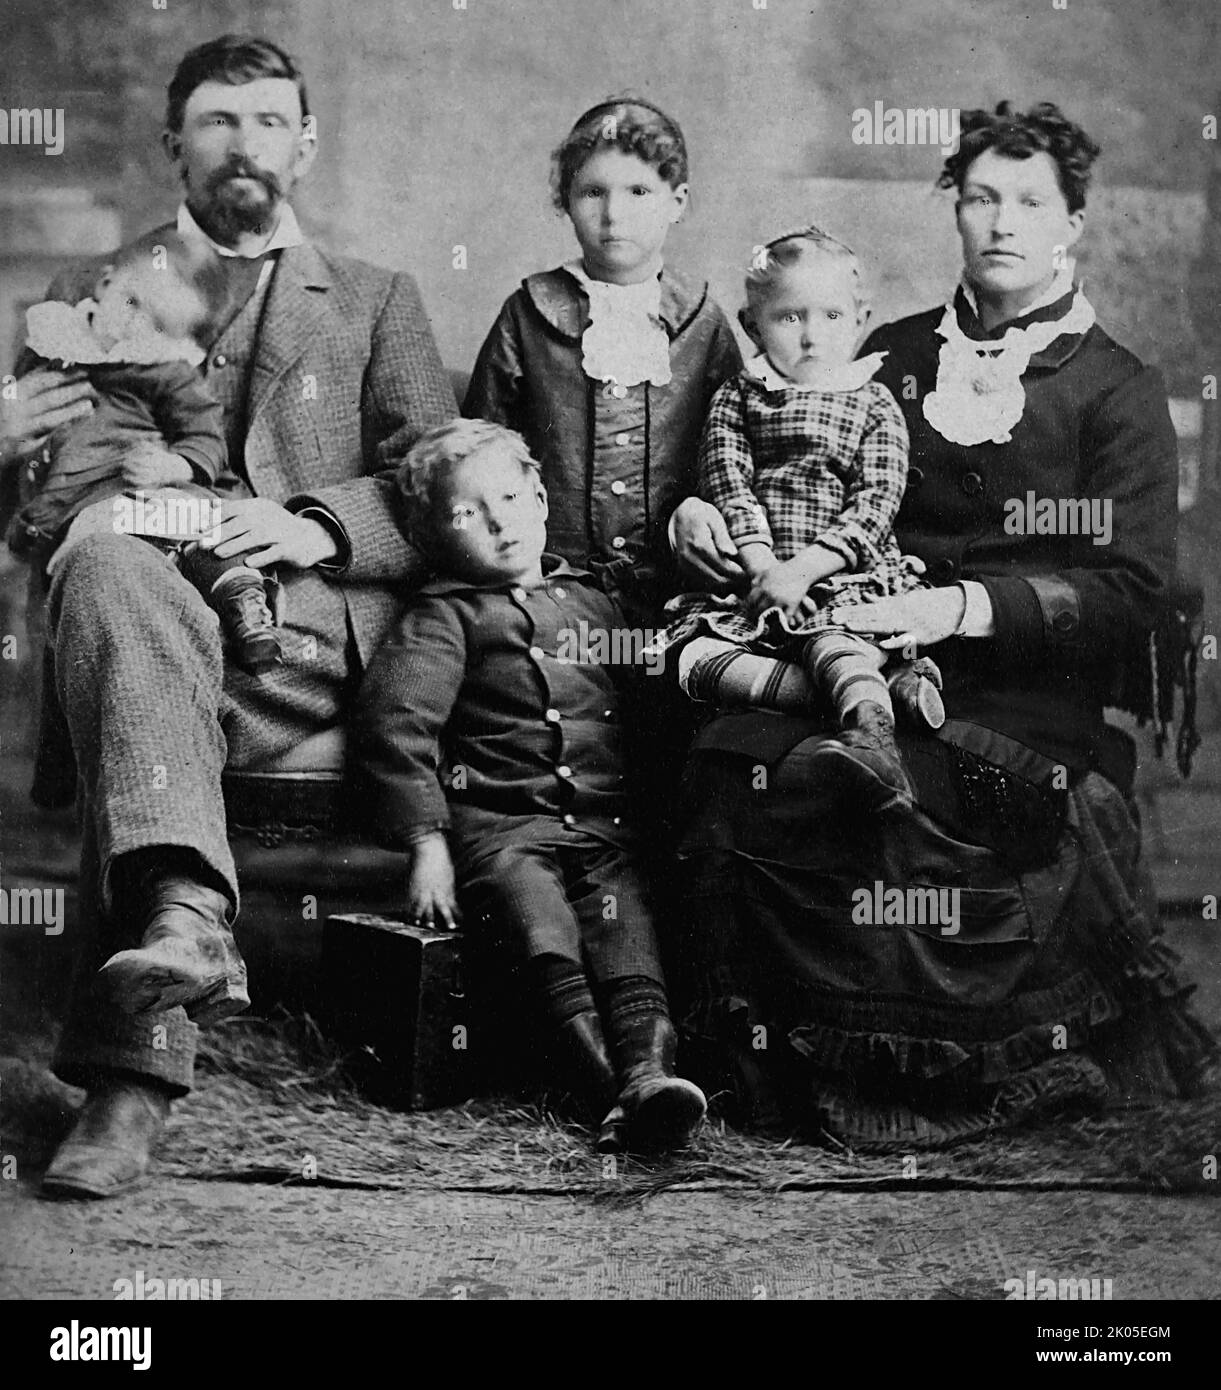 Un portrait de famille de type bricolé, env. 1880s. Banque D'Images